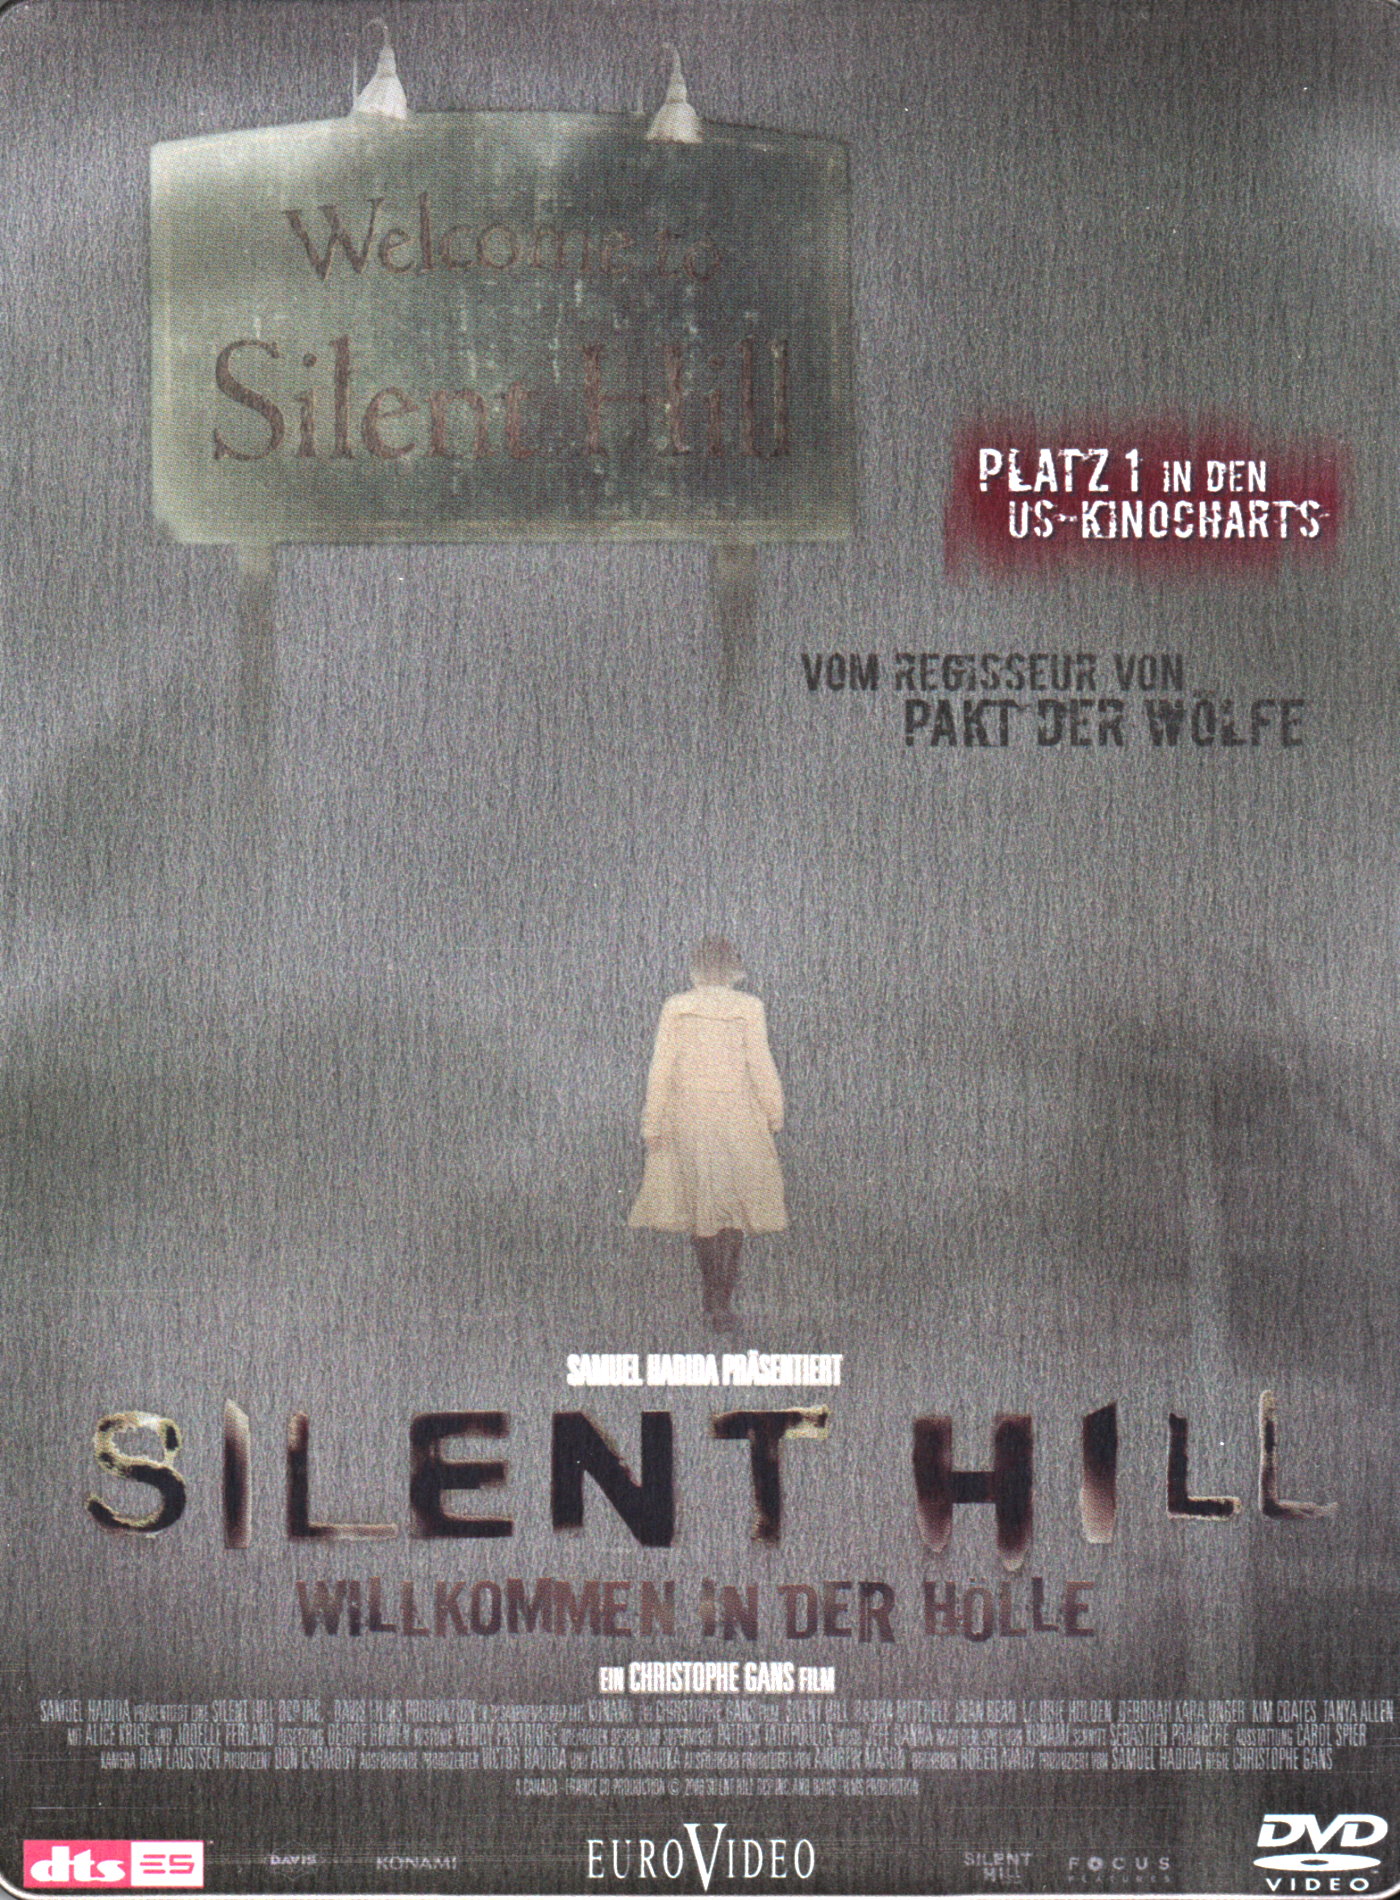 Cover - Silent Hill - Willkommen in der Hölle.jpg